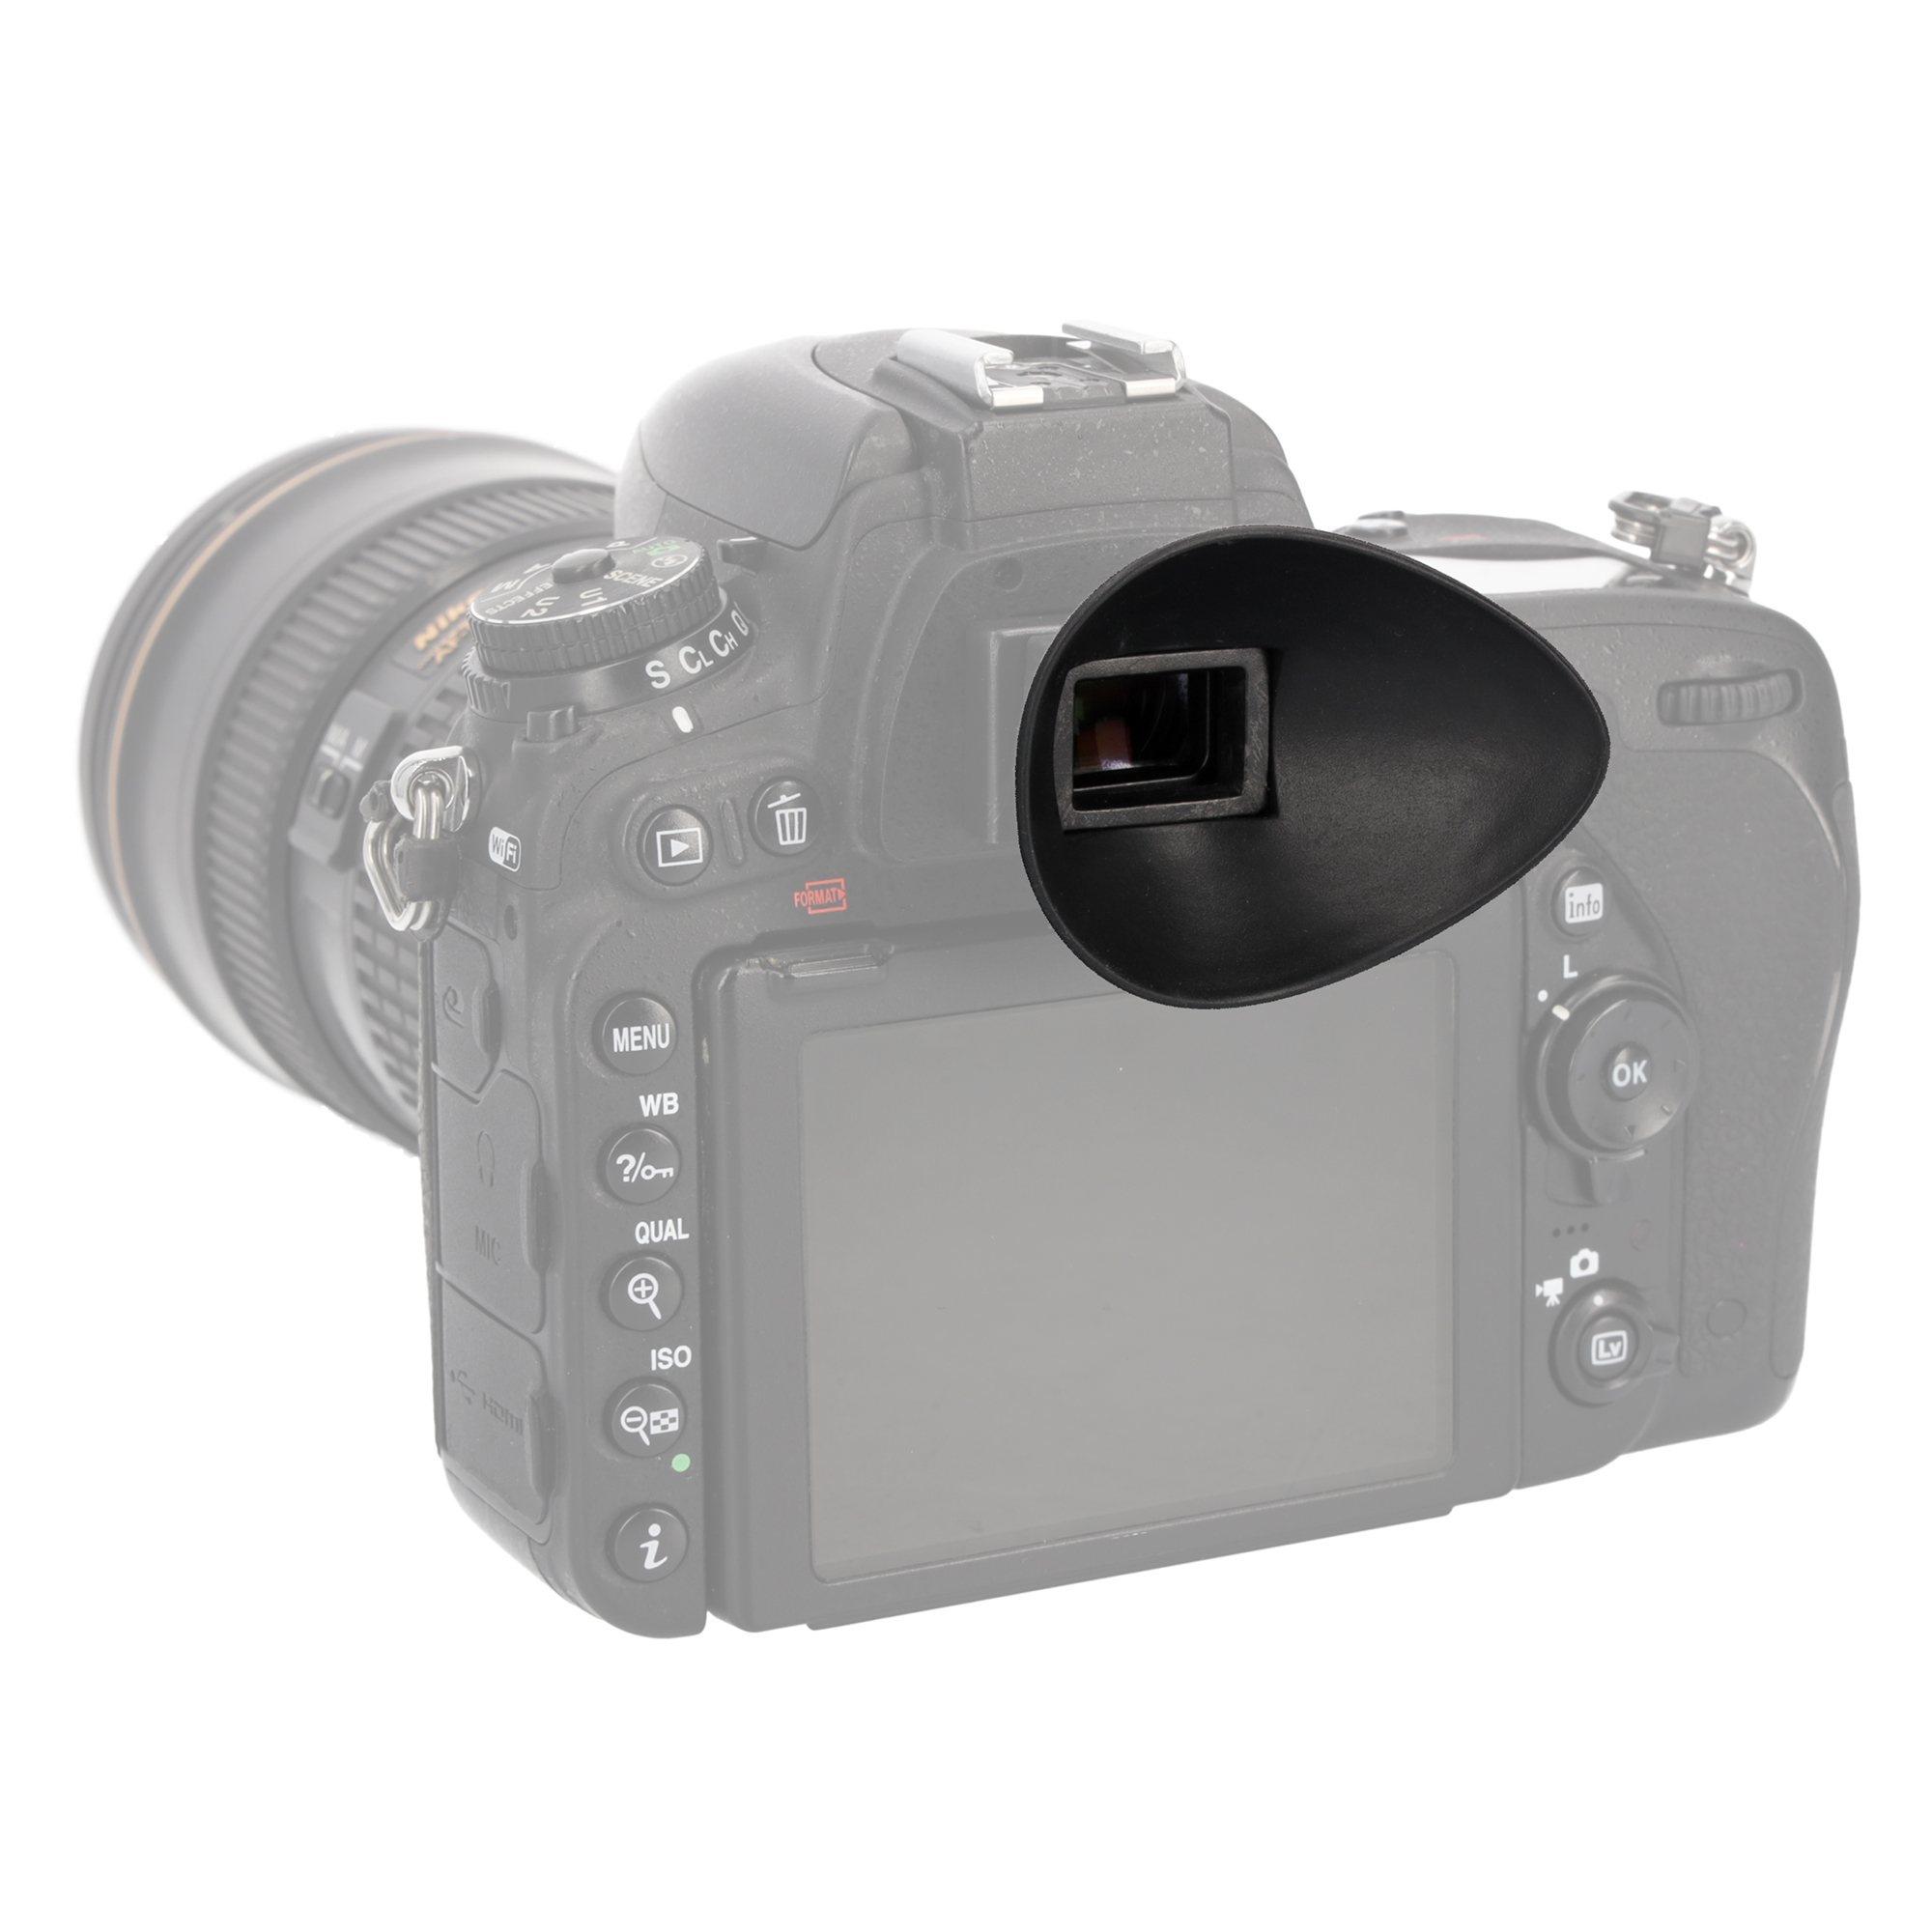 ayex Augenmuschel (Tropfenform) Sucher für Nikon (22 mm) z.B. D3000, D3100, D5000, D7000, D40, D40x, D60, D70, D80, D90, D100, D200, D300, D300s